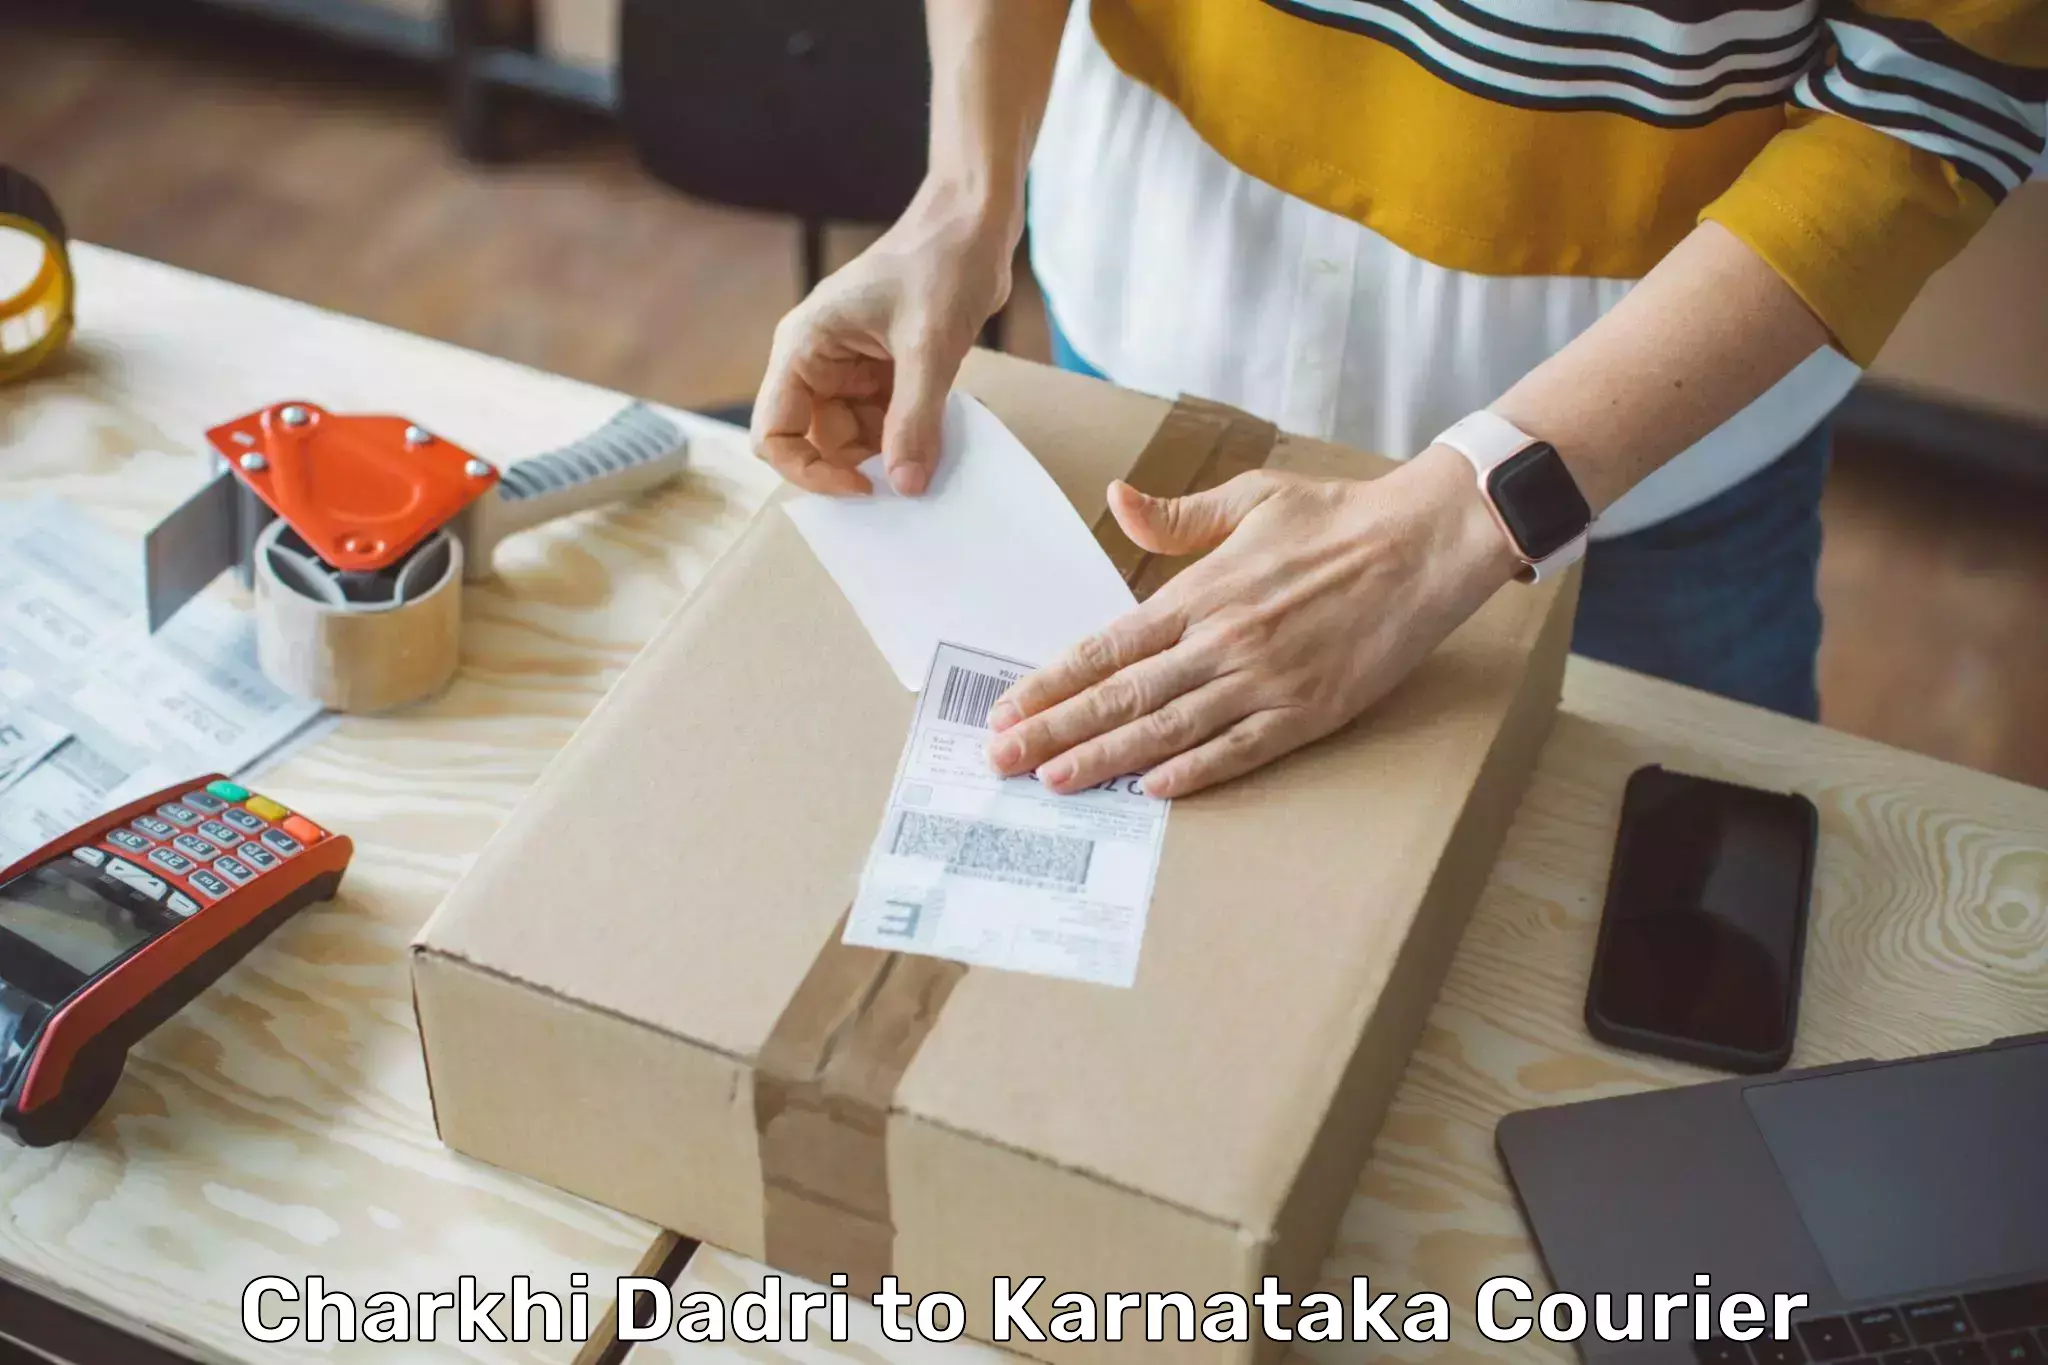 E-commerce logistics support Charkhi Dadri to Karnataka